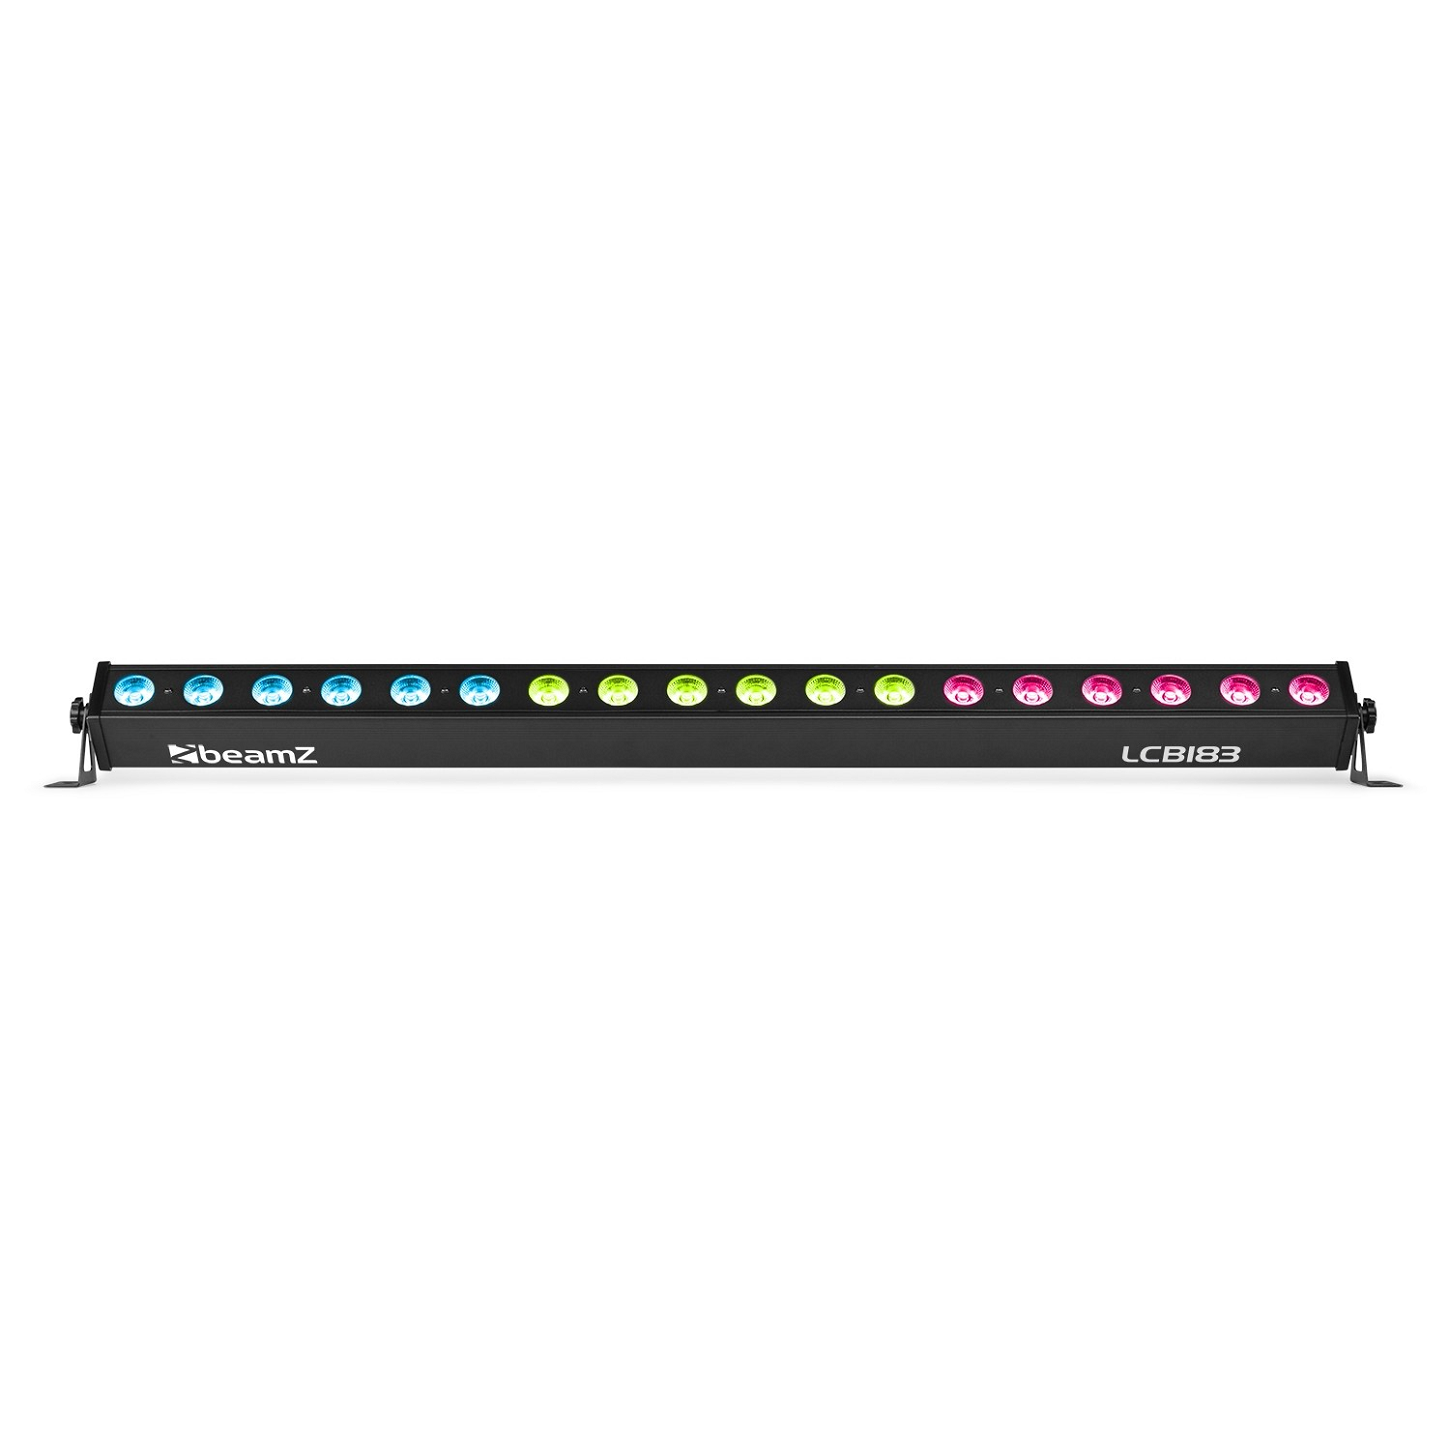 LCB183 LED Bar